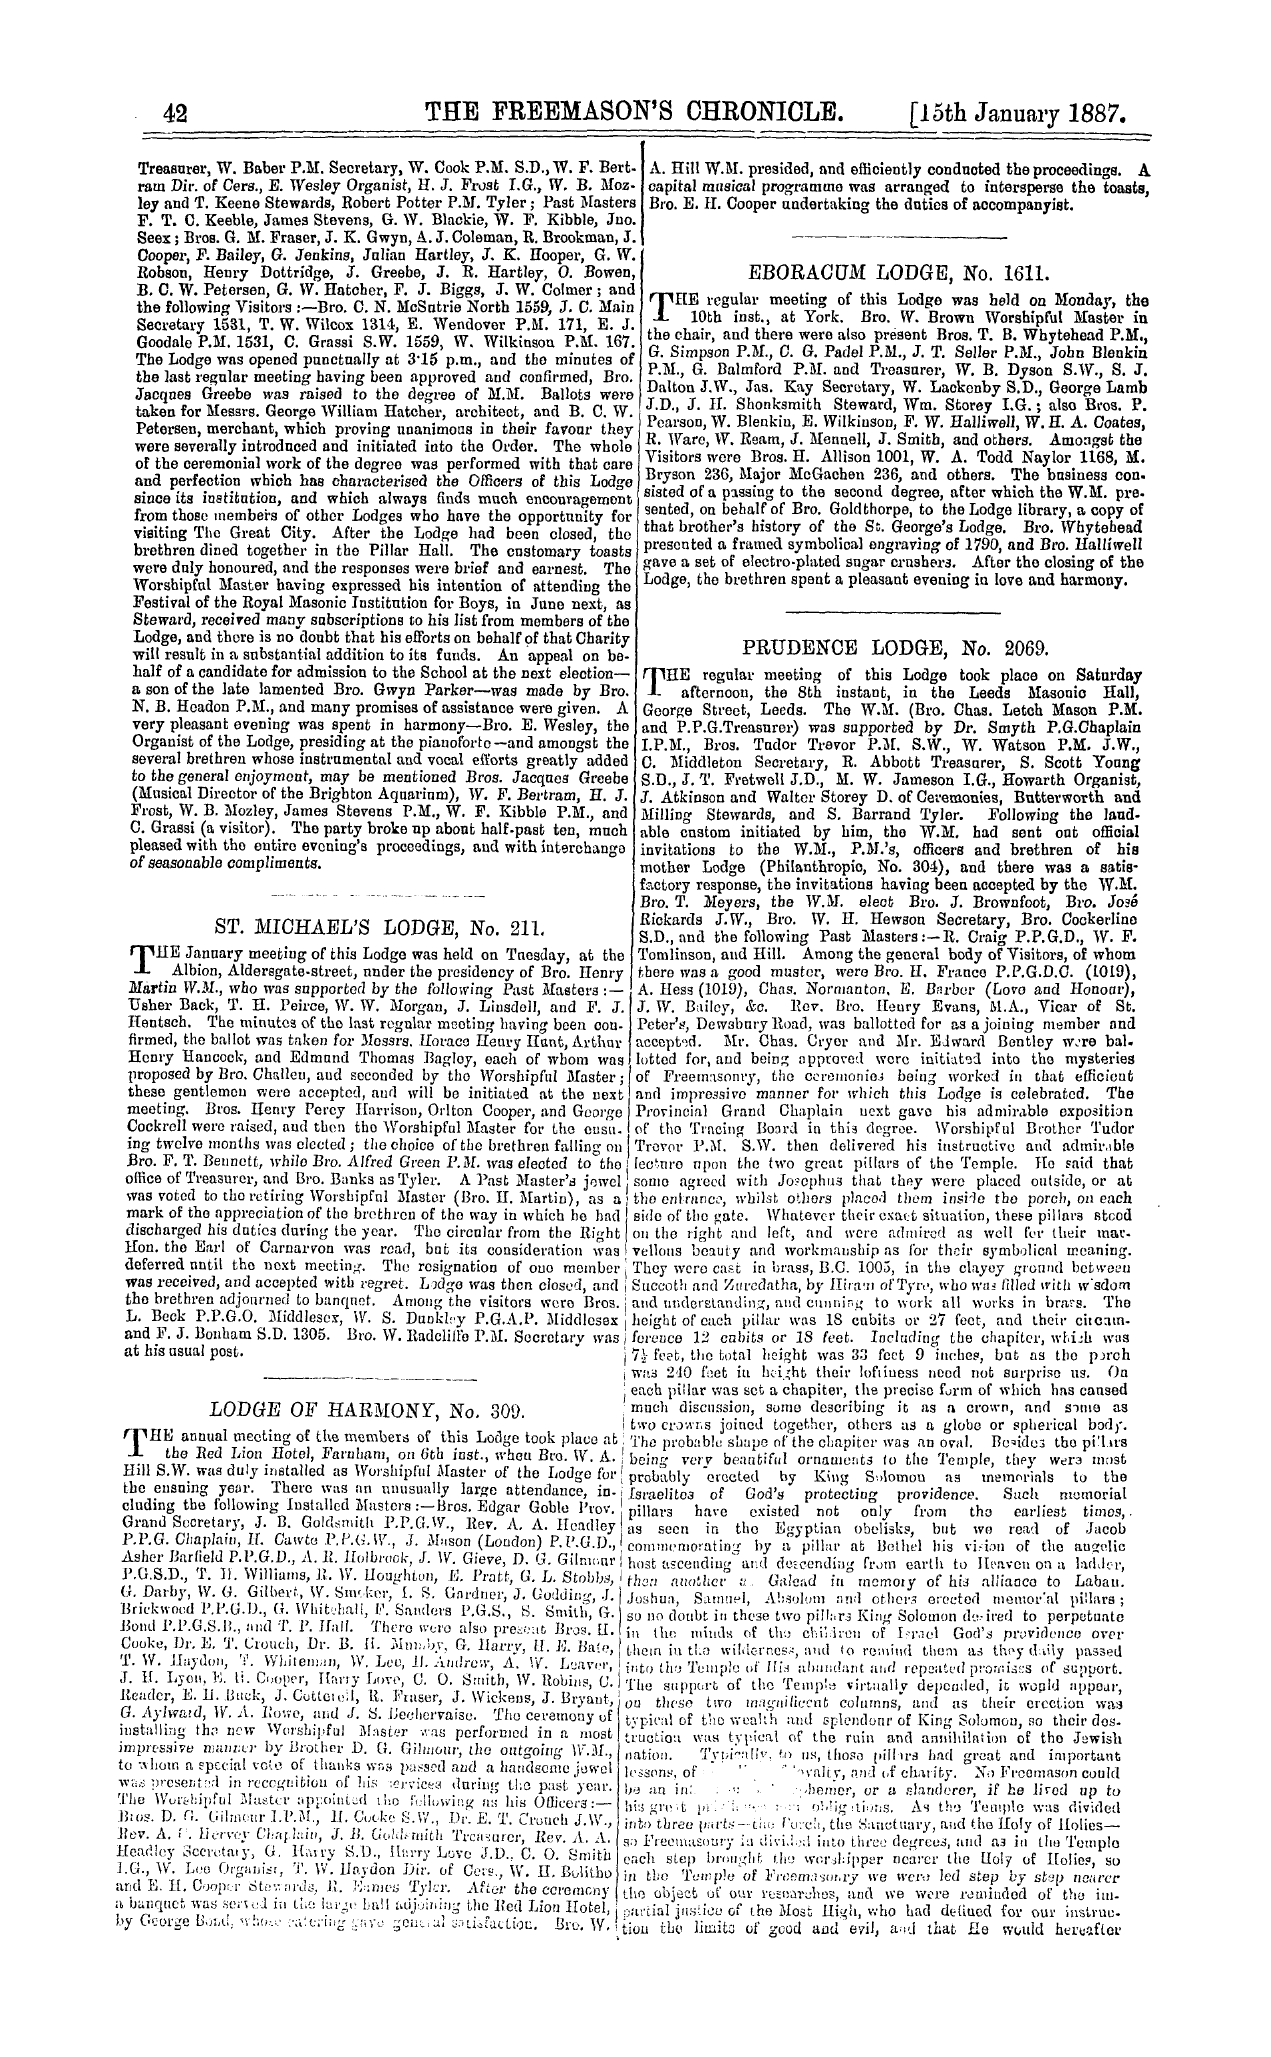 The Freemason's Chronicle: 1887-01-15 - Lodge Of Harmony, No. 309.